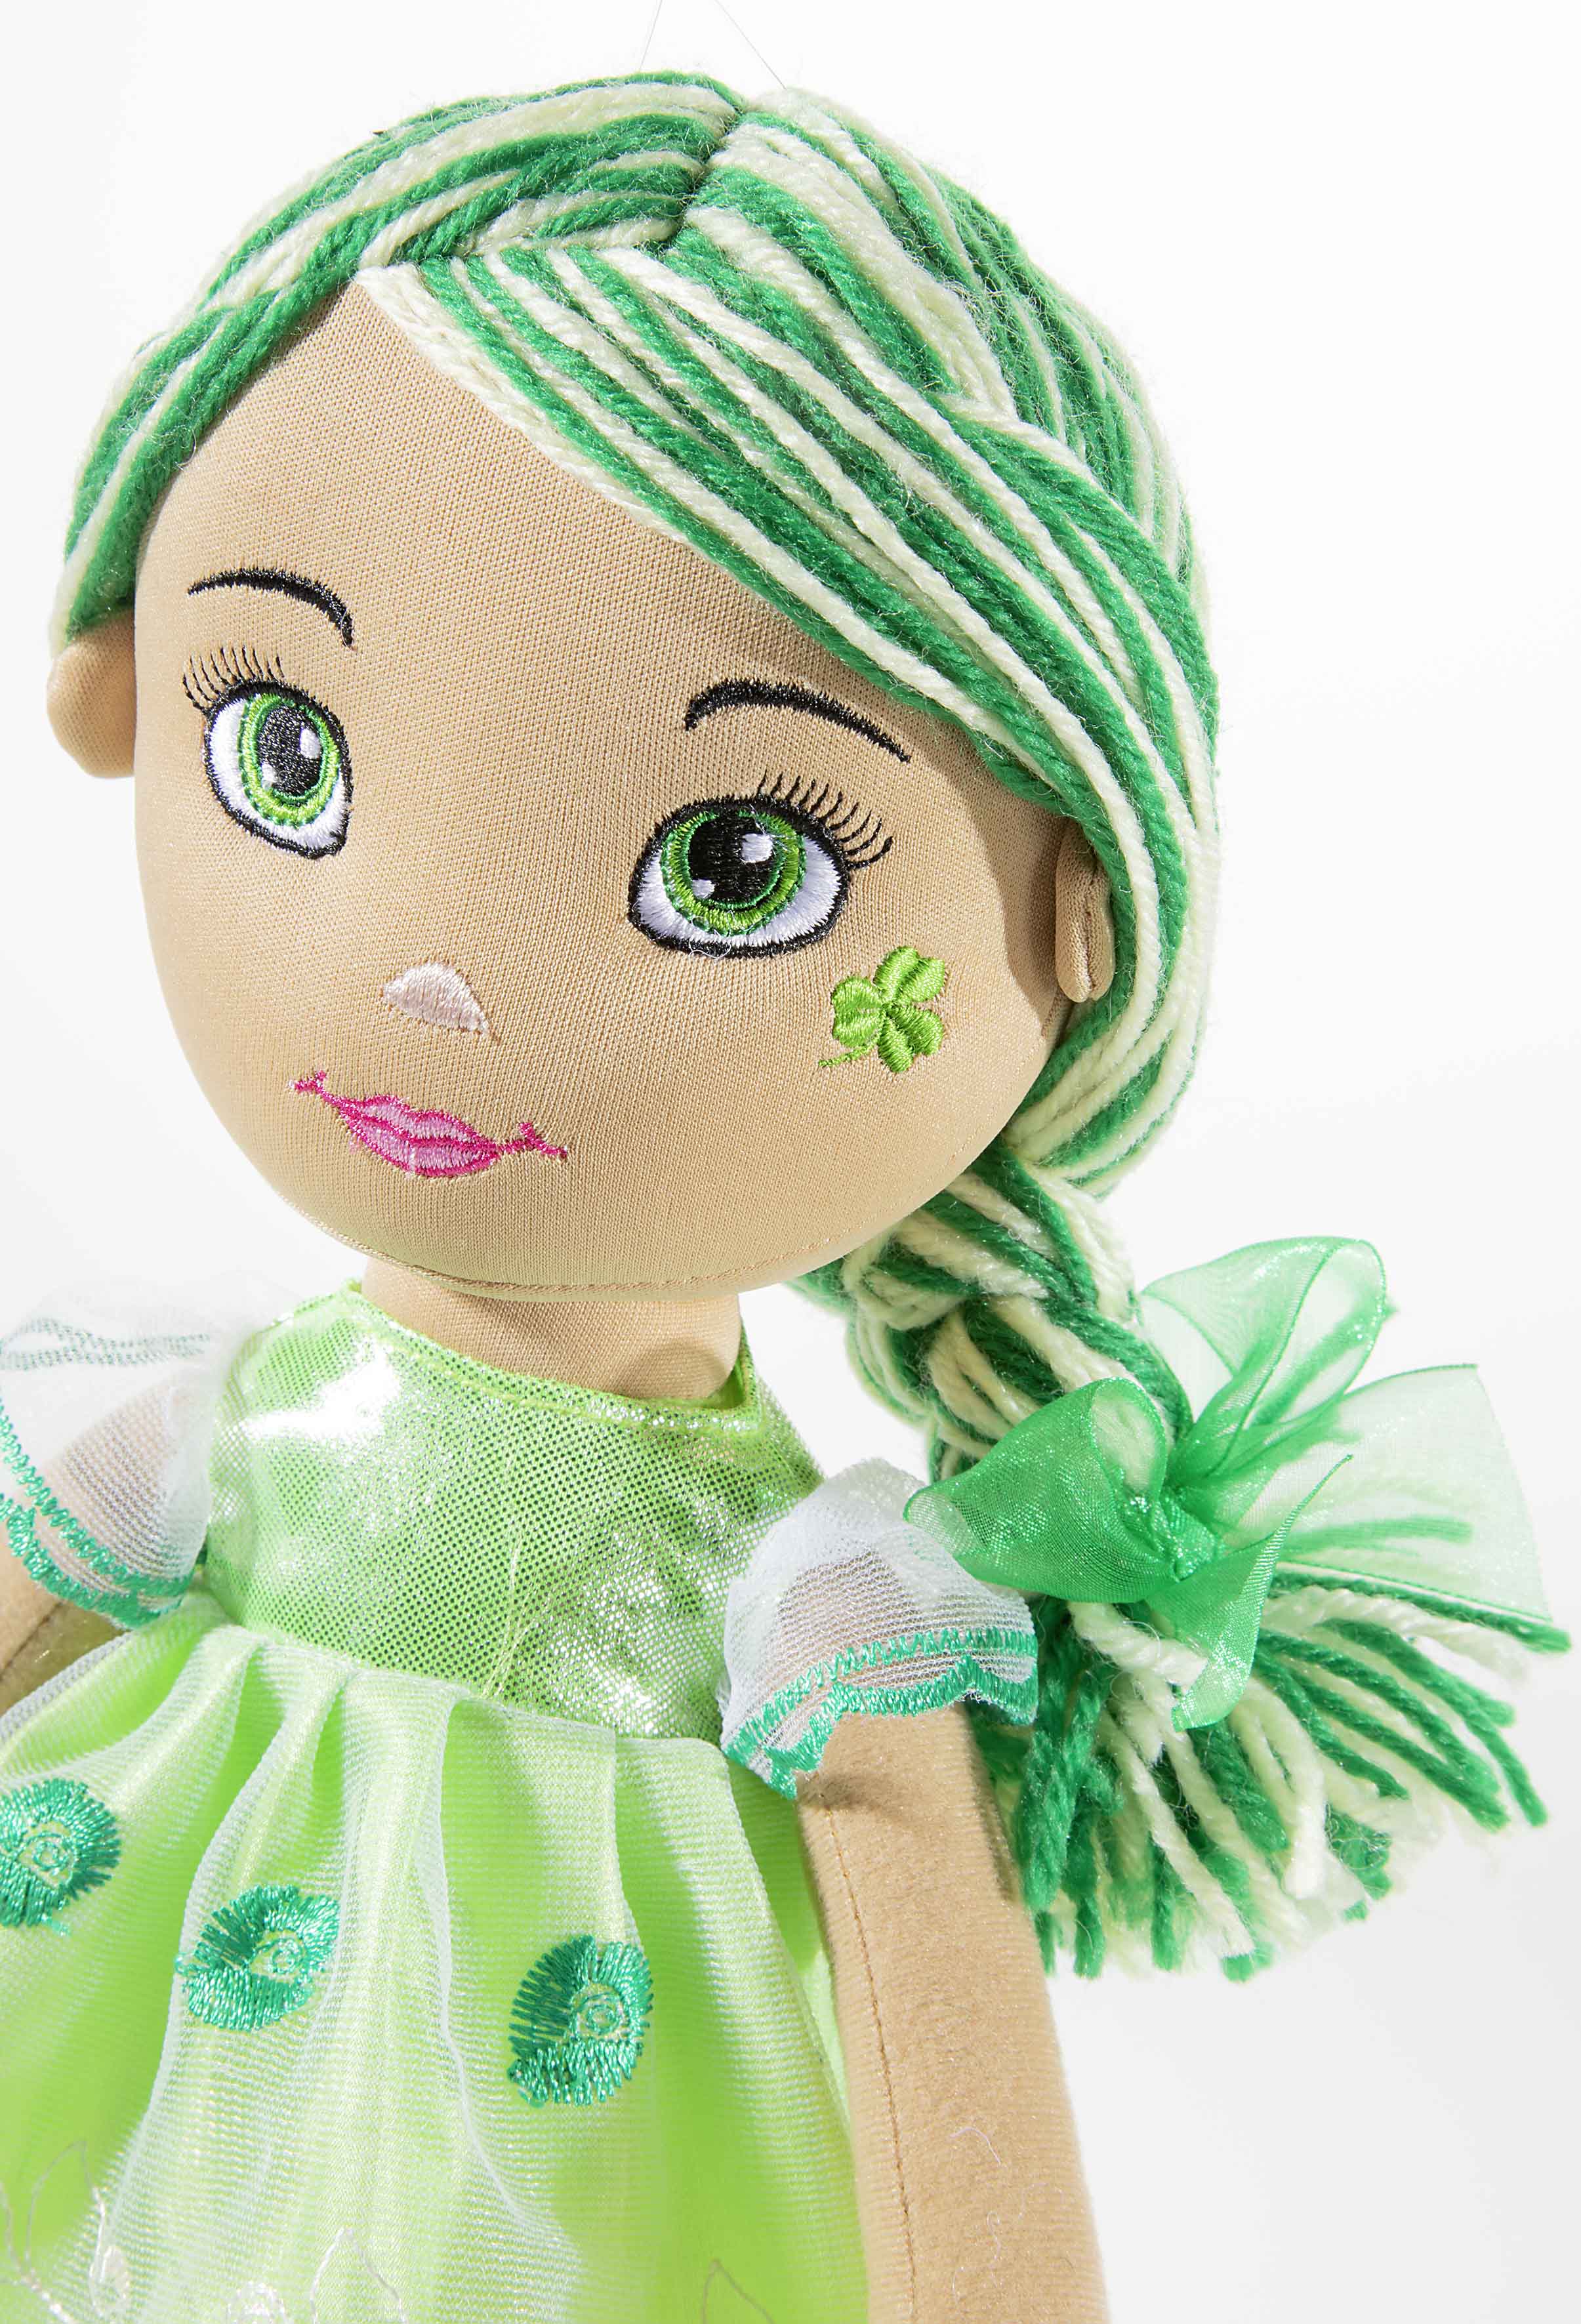 Heunec Bella-Verdi in 35cm aus der Bambola Dolce Serie mit grün-weißen Haaren Kopf